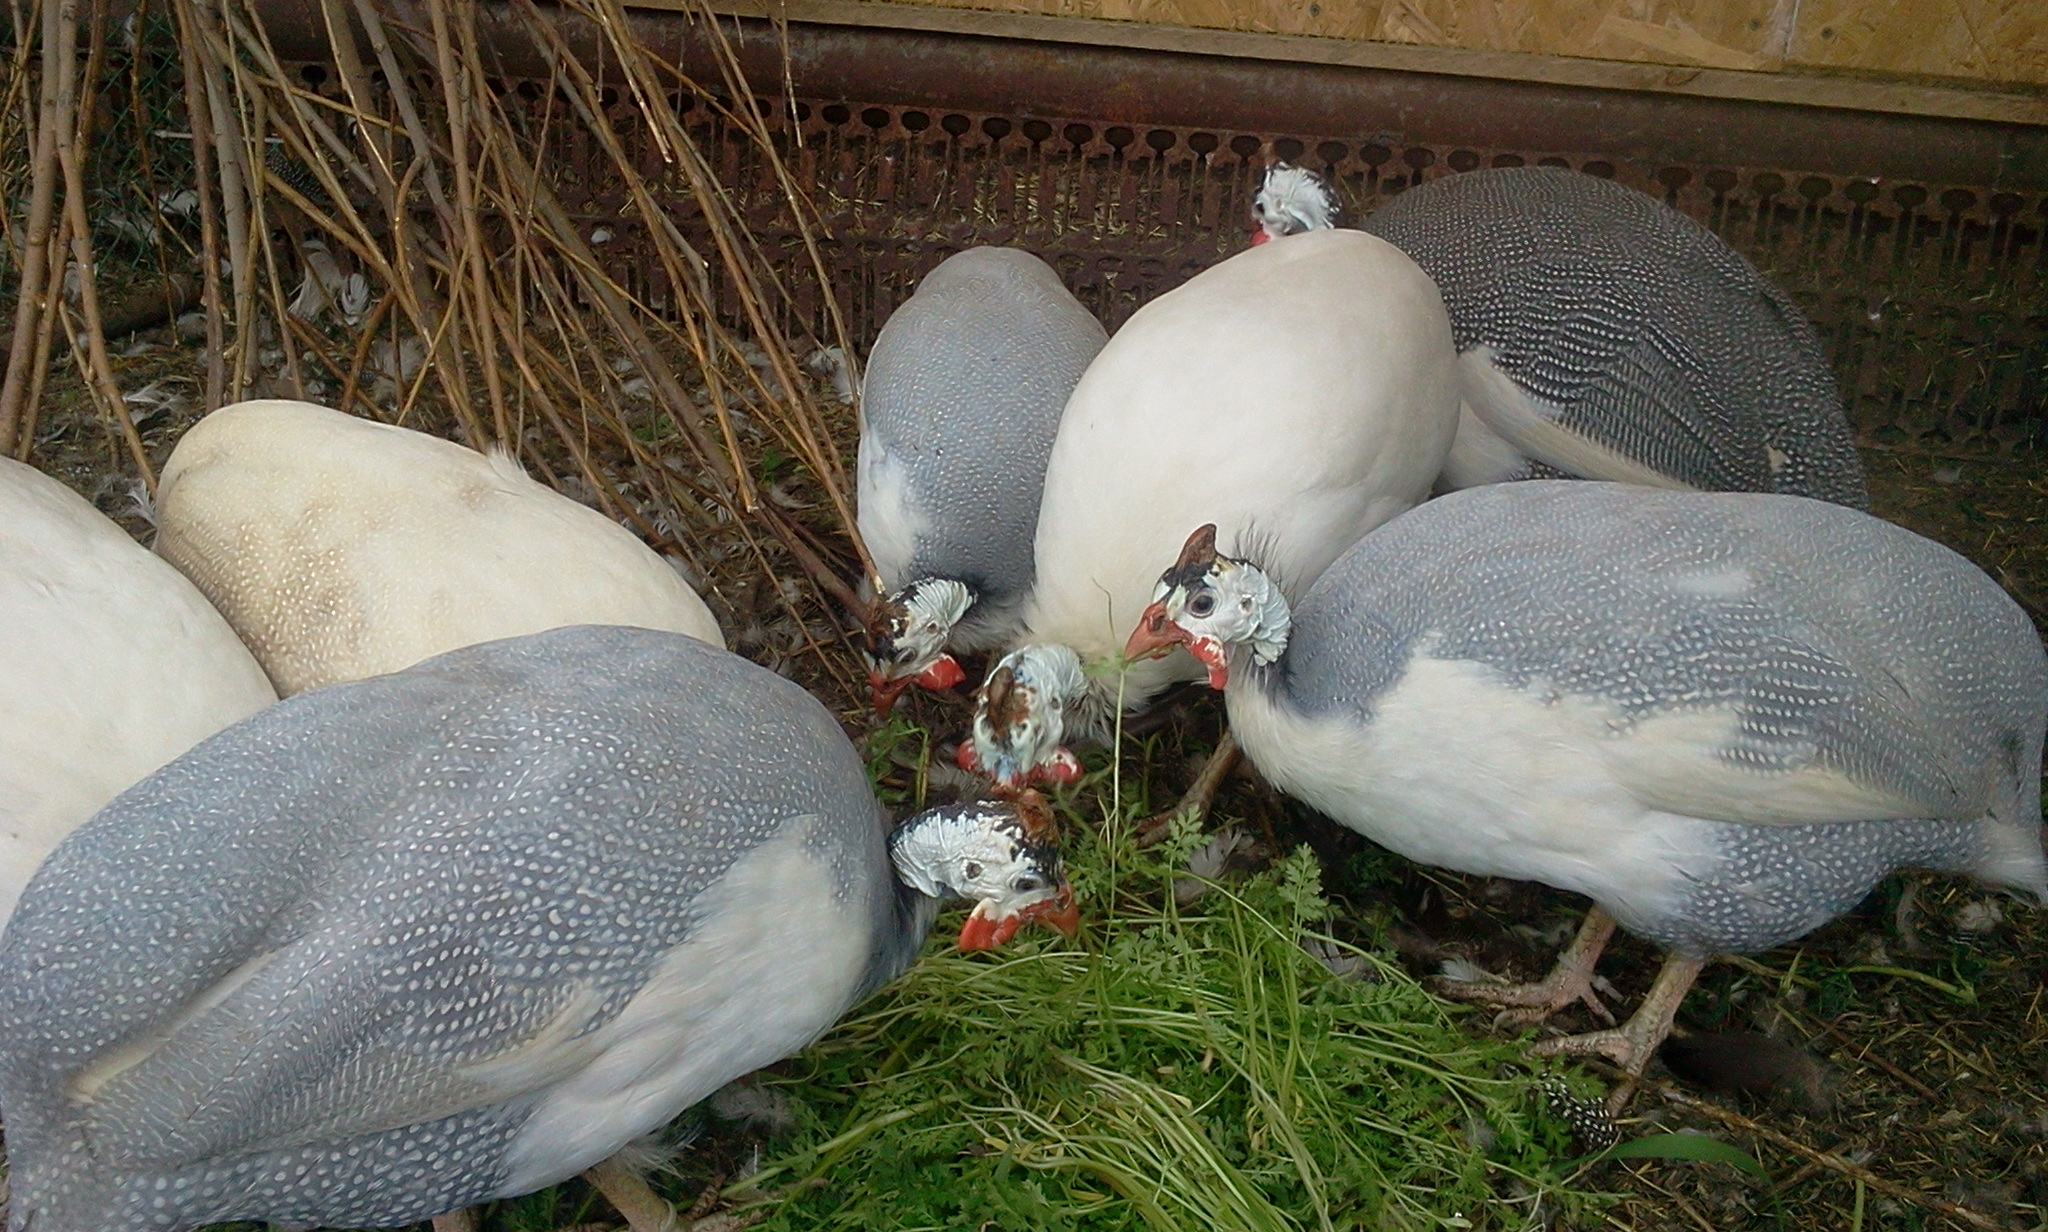 Волжская белая цесарка – содержание, нюансы кормления взрослых птиц и птенцов